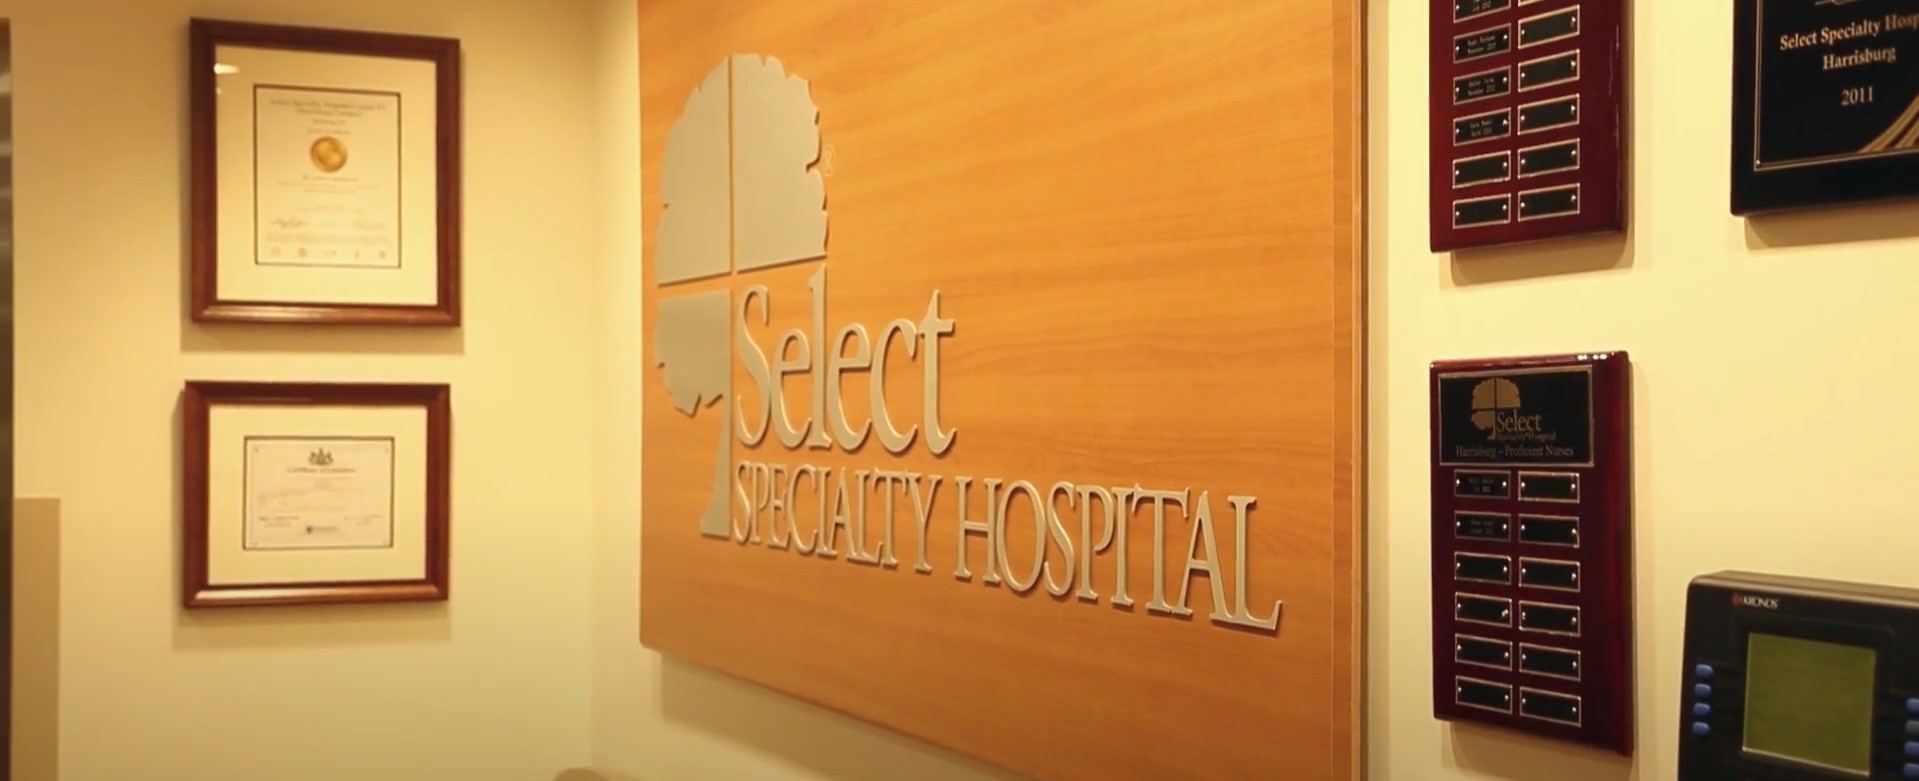 Select Specialty Hospital Dallas Texas Texas Solar Group